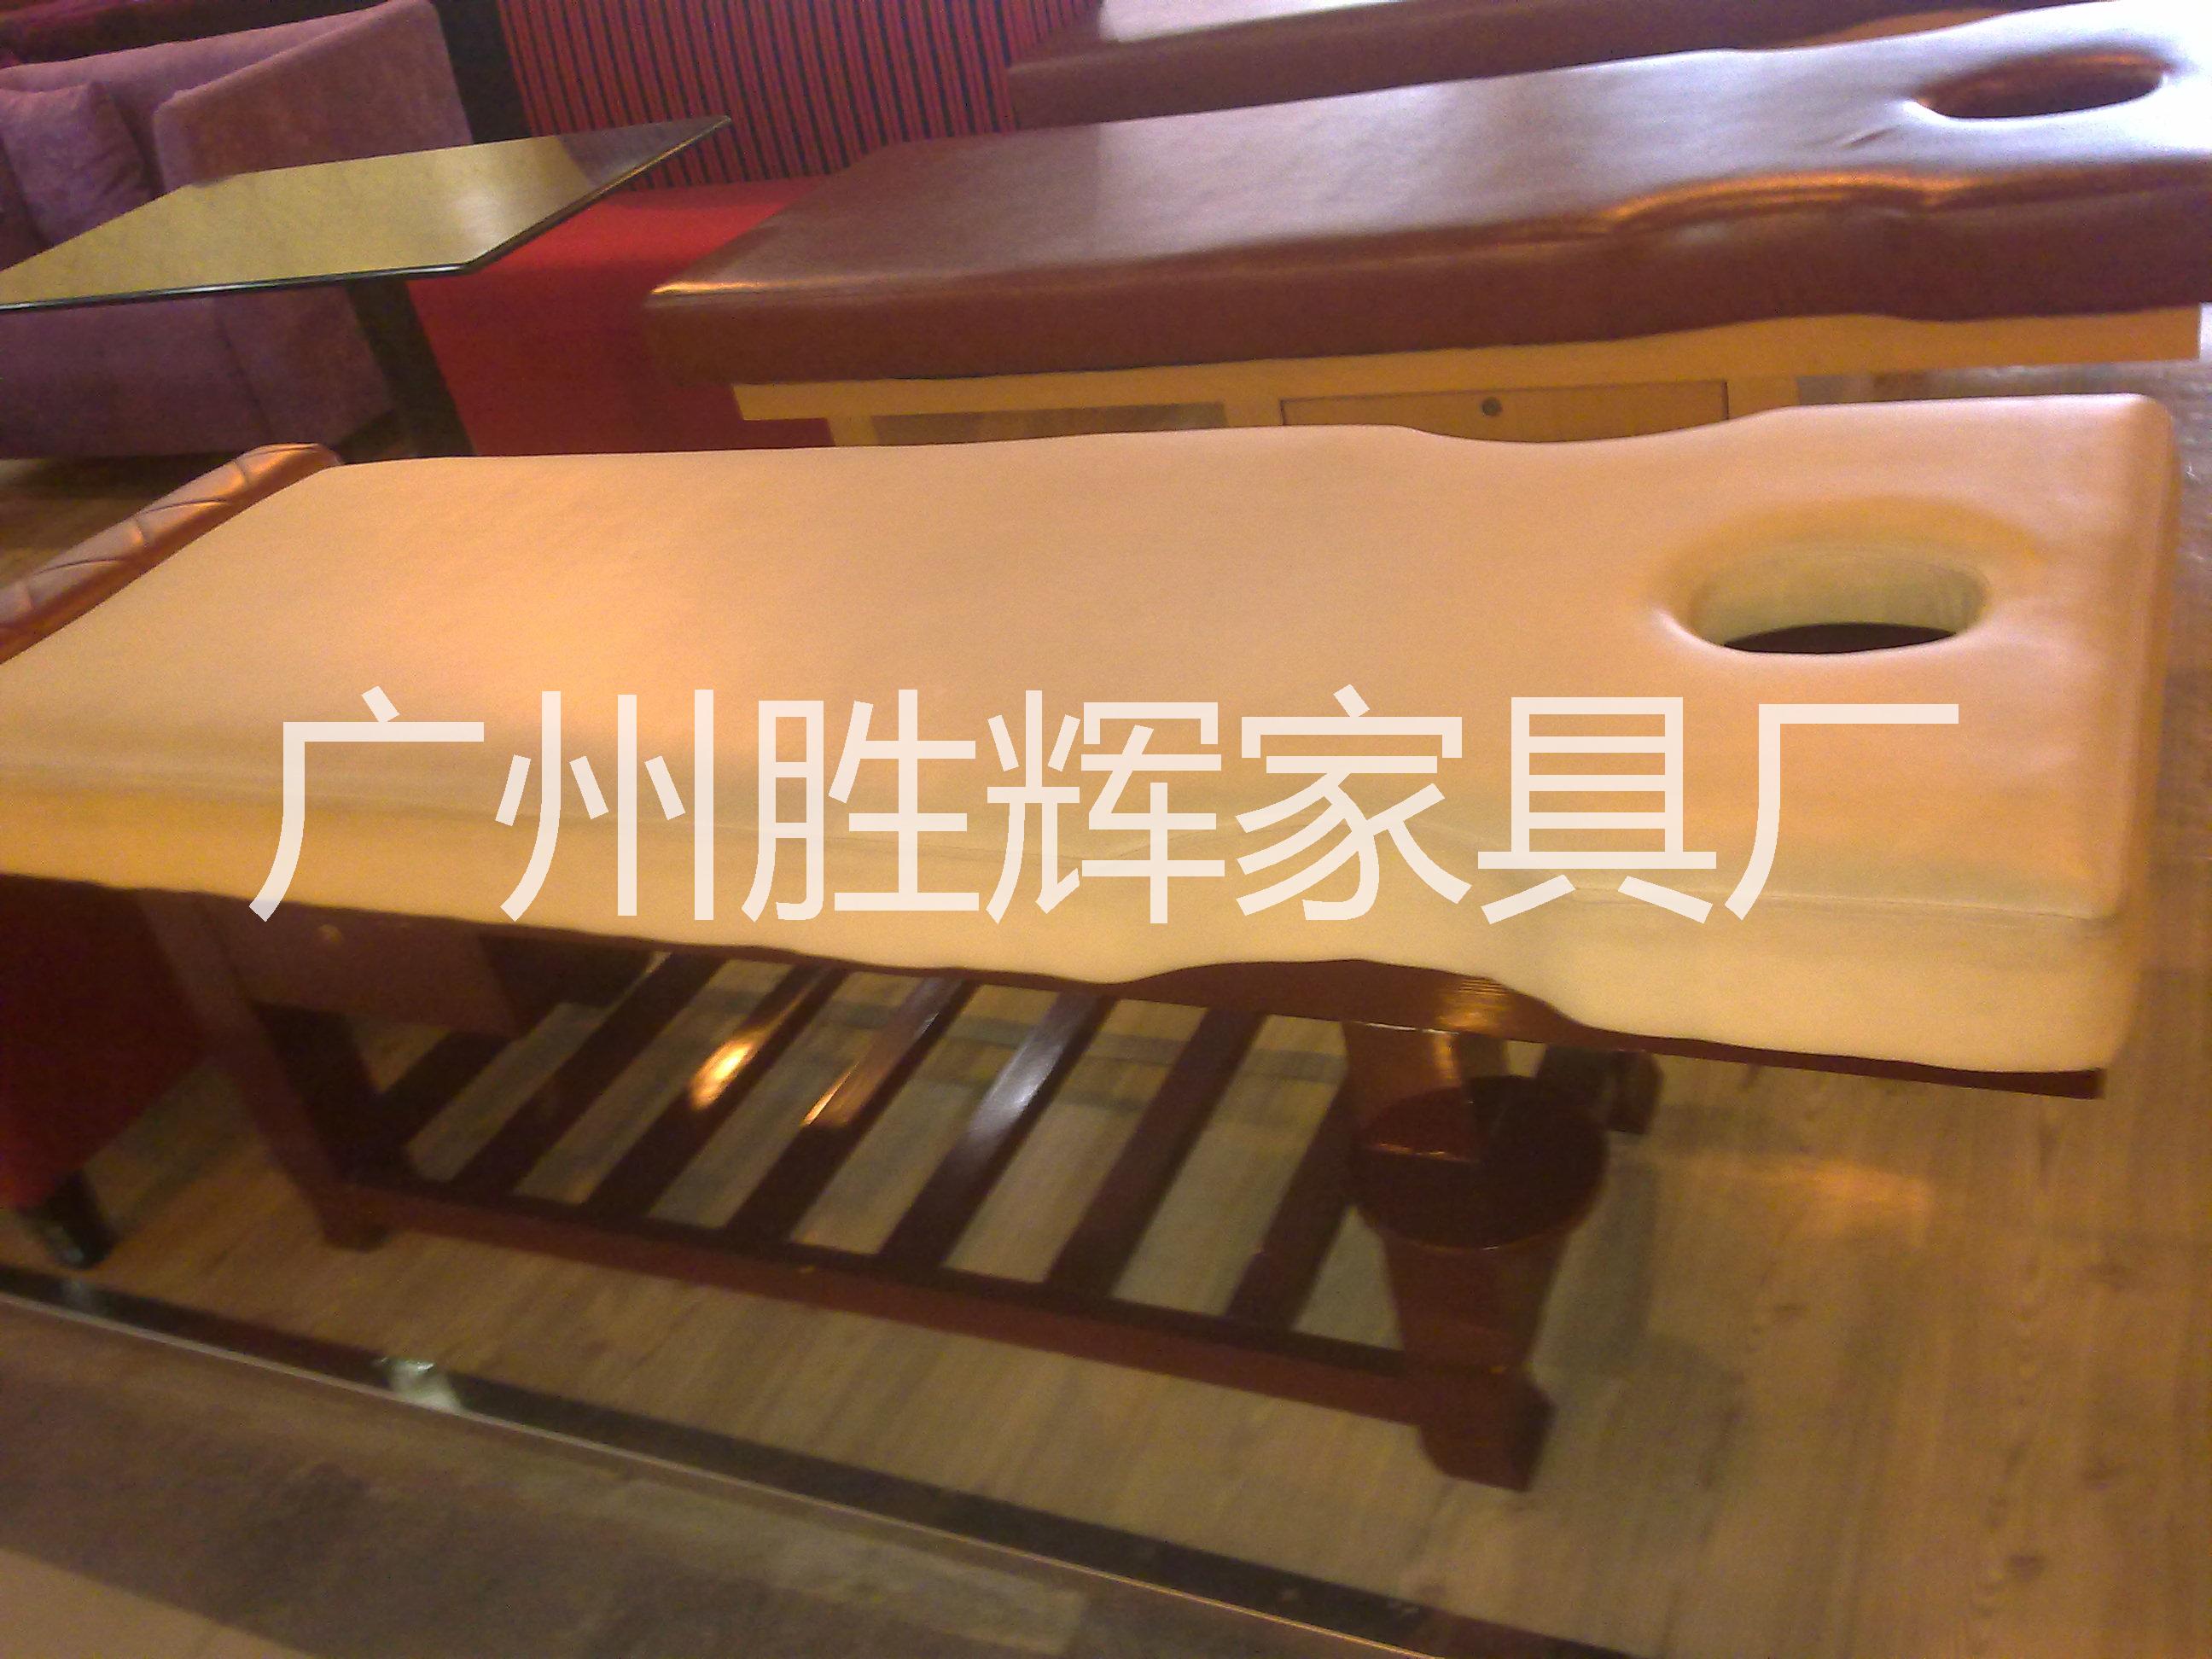 供应广州佛山专业生产泰式按摩床、美容床